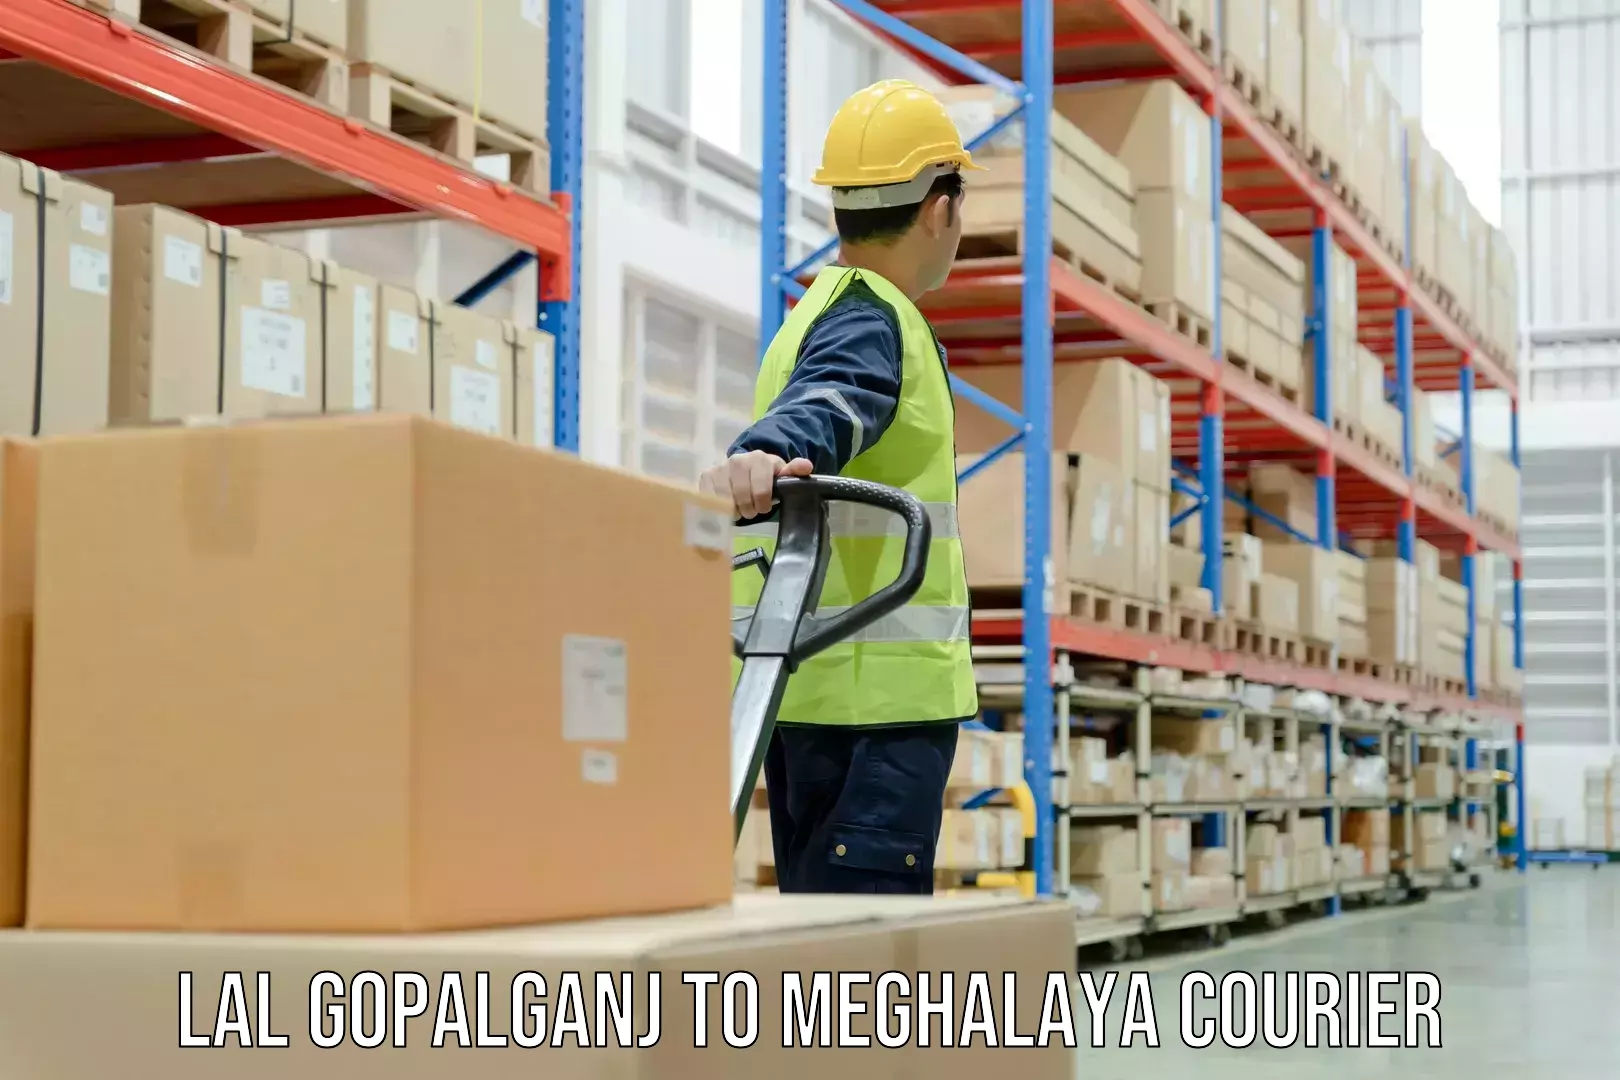 Lightweight parcel options Lal Gopalganj to Jowai